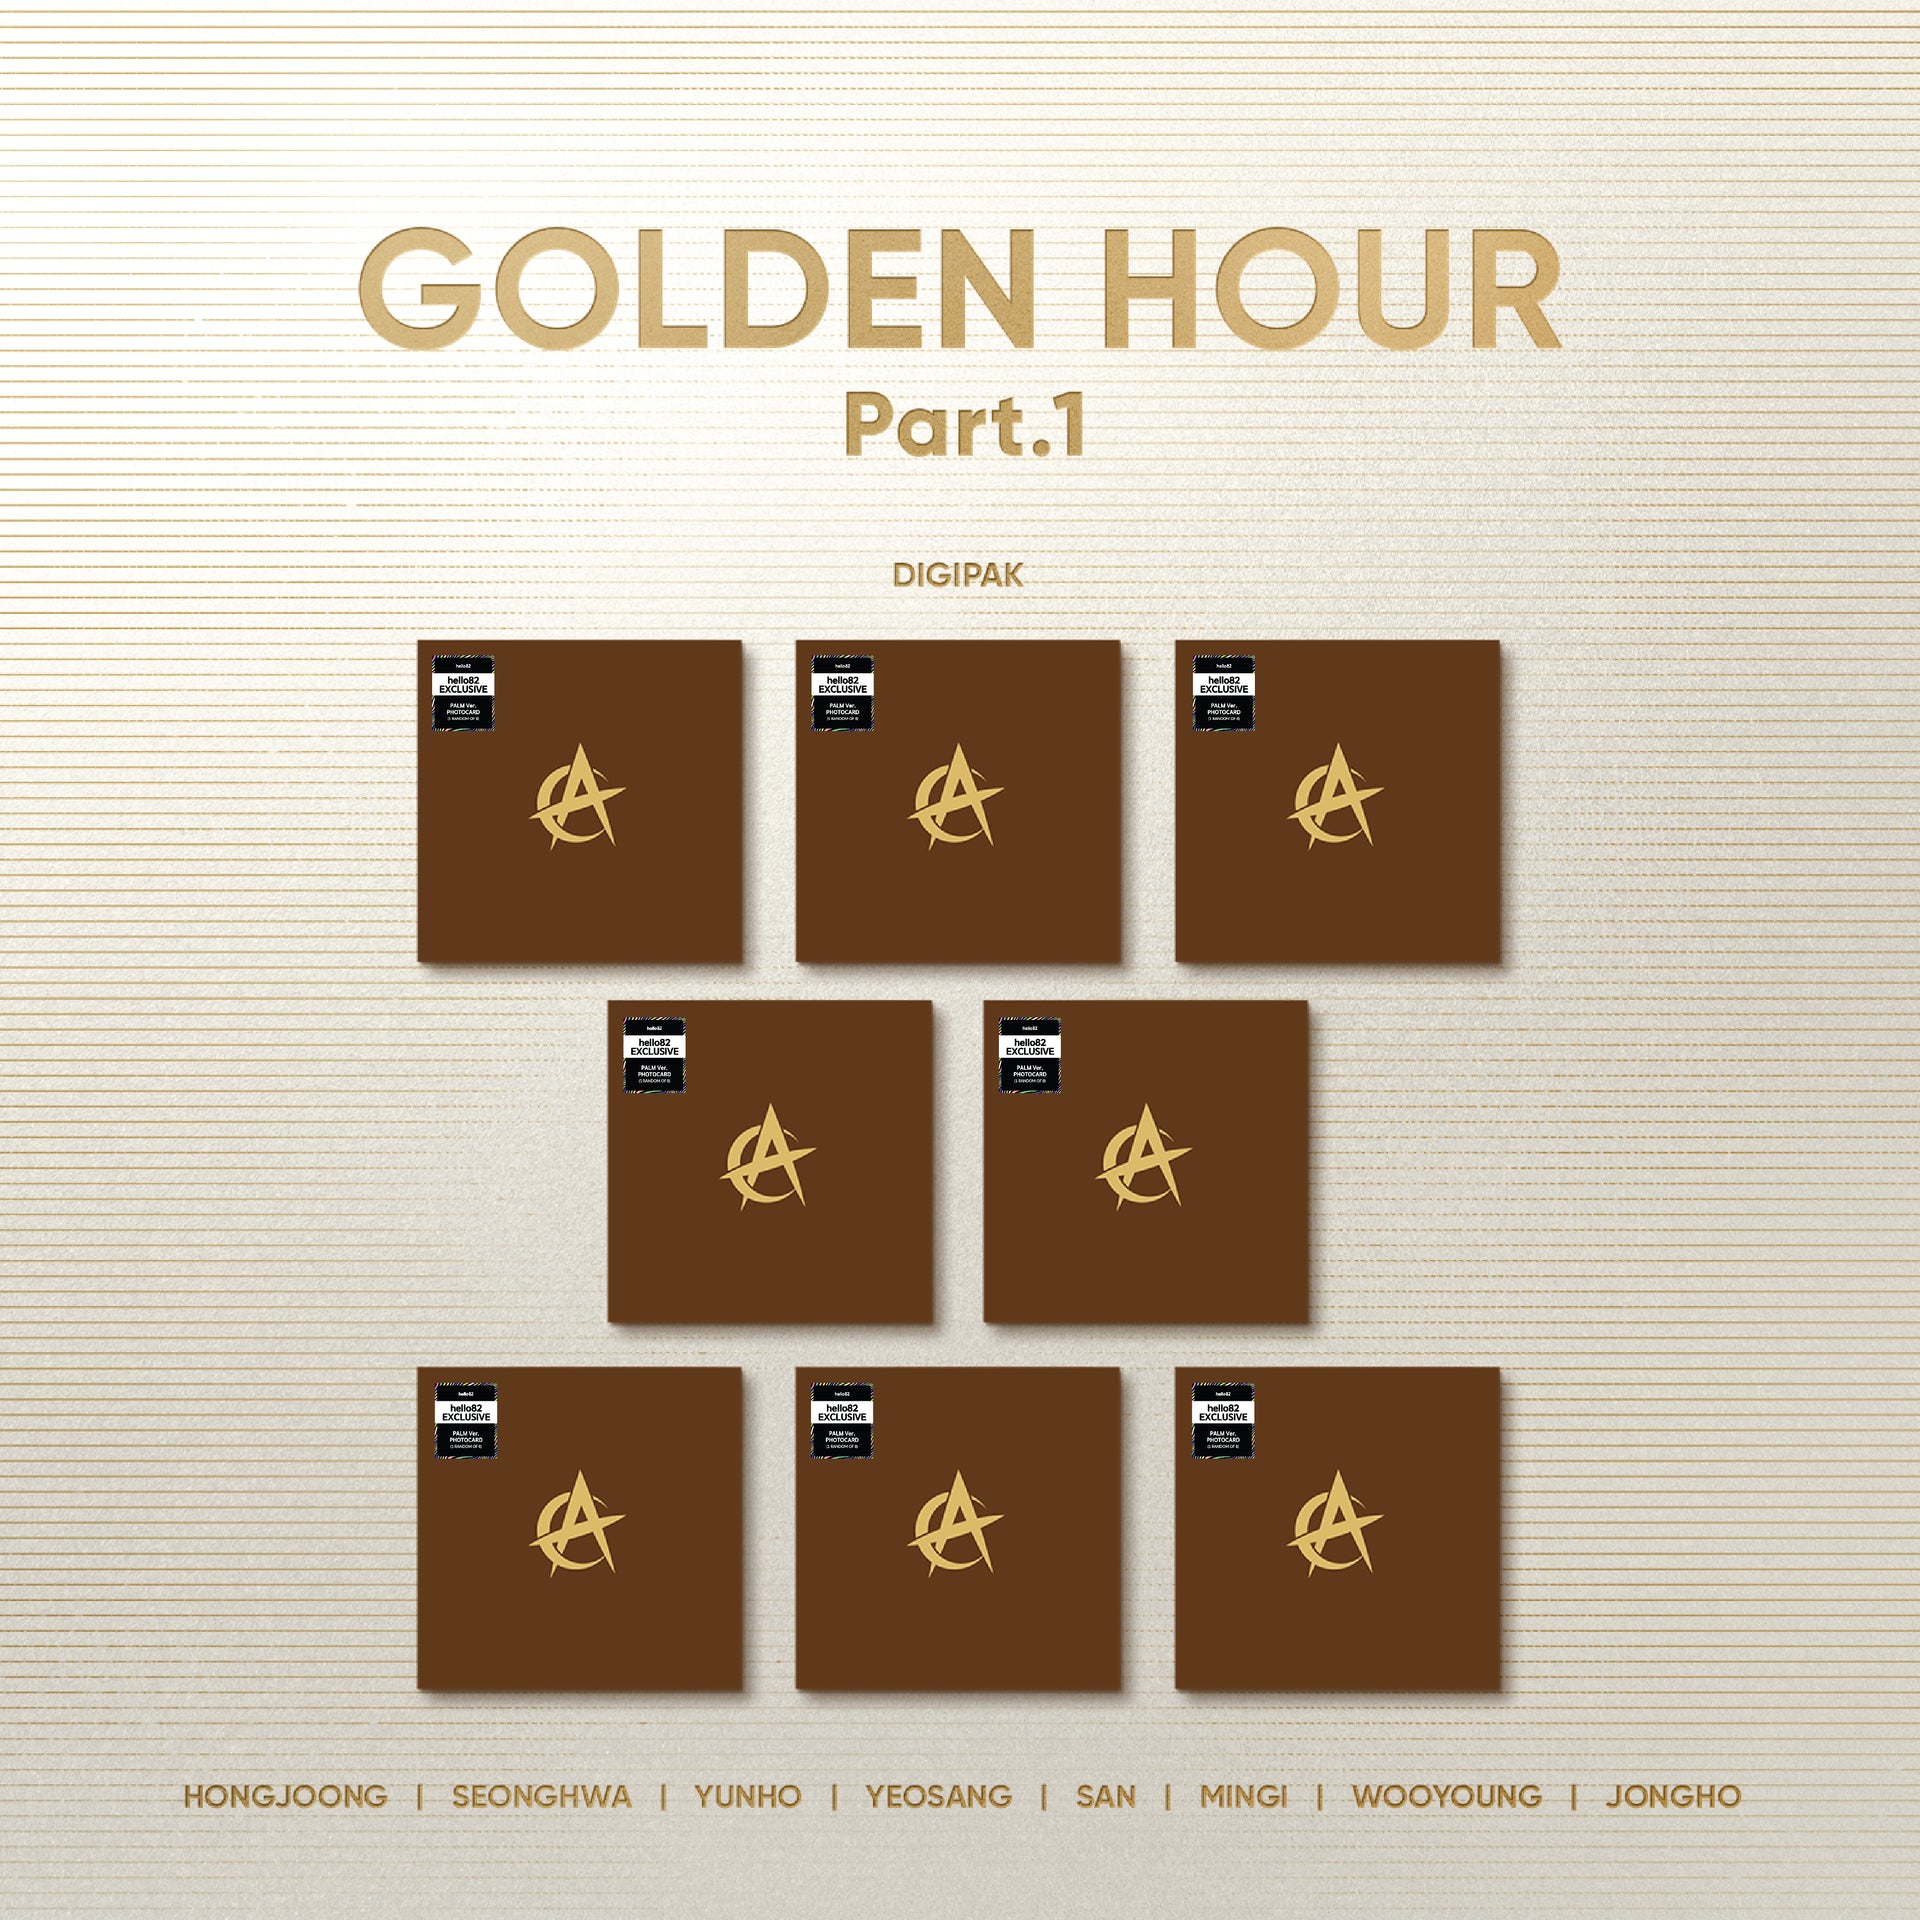 ATEEZ - GOLDEN HOUR : Part.1 - hello82 Exclusive (Digipak) (Random)